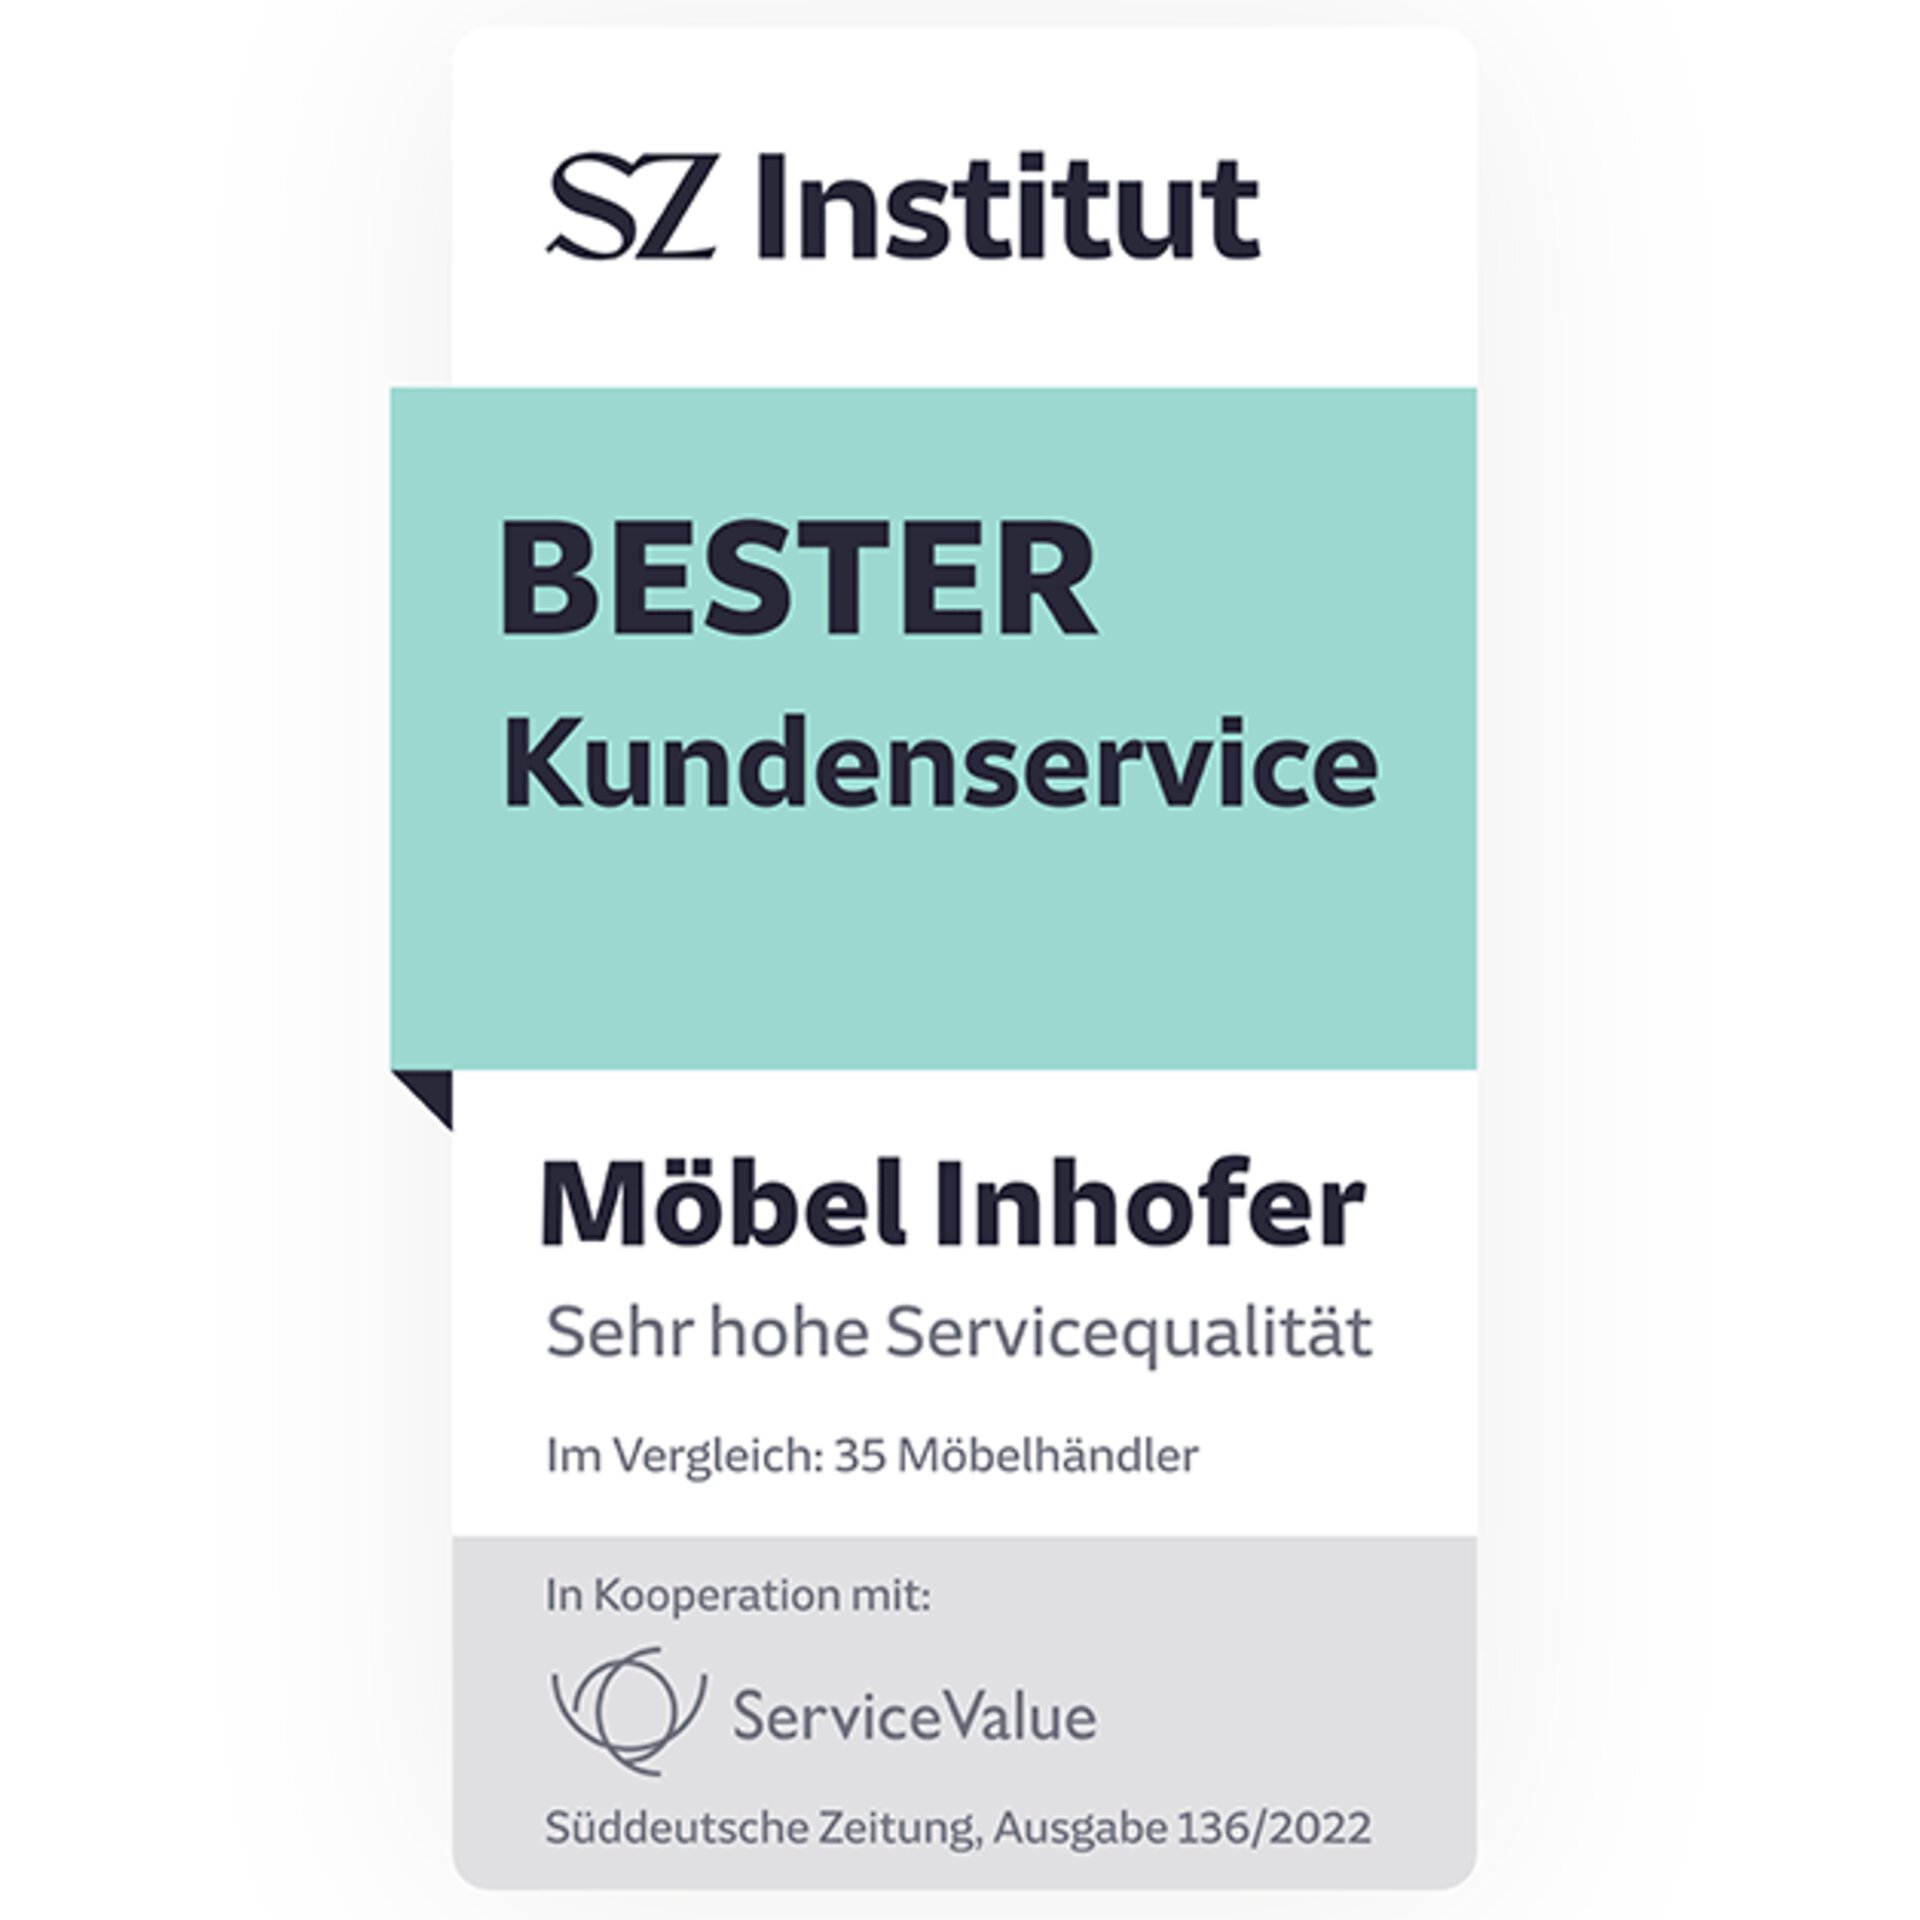 Auszeichnung durch das SZ Institut: Möbel Inhofer bietet  sehr hohe Servicequalität.